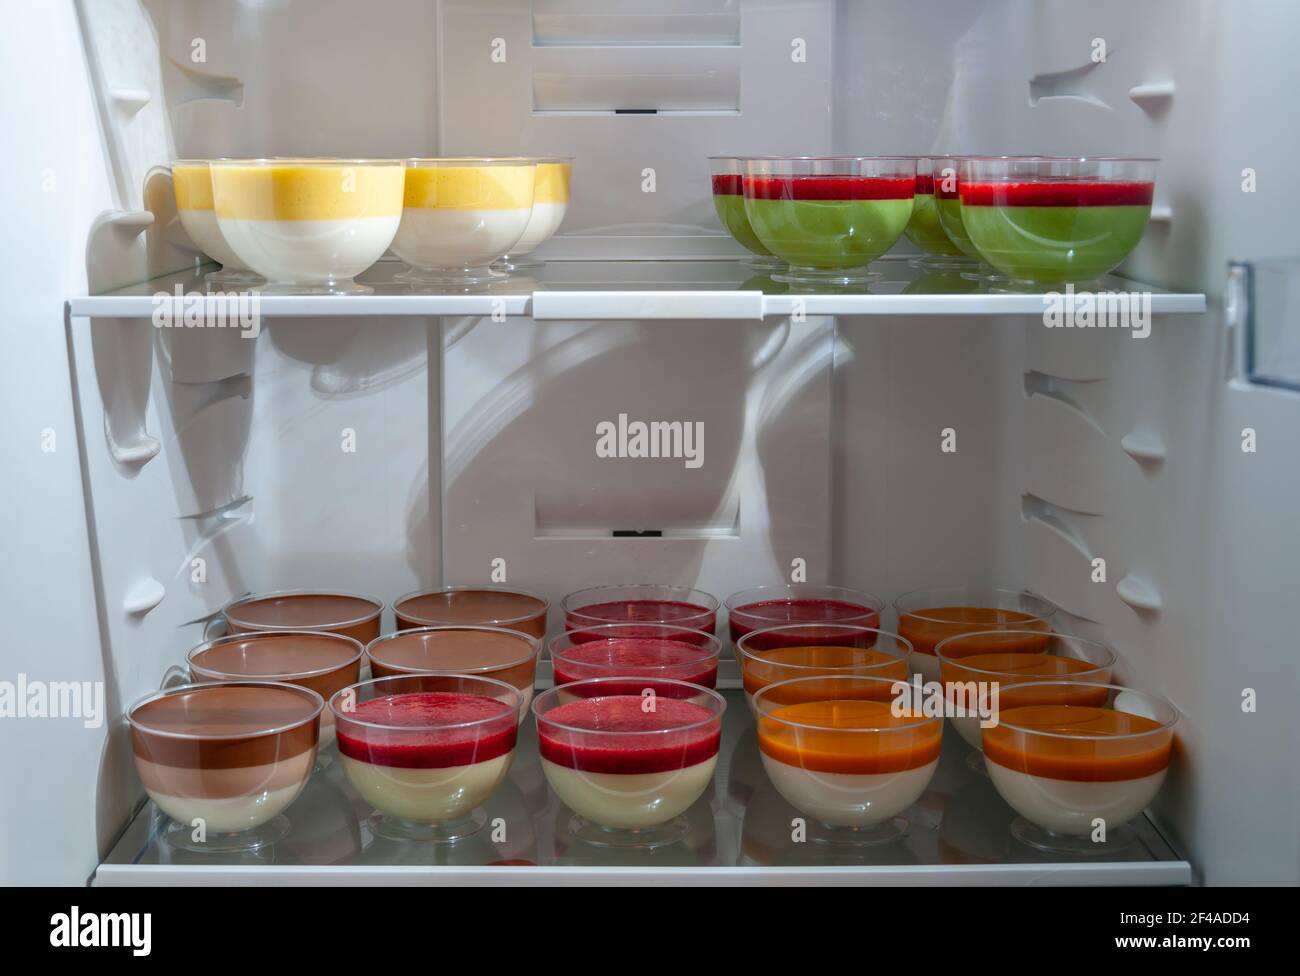 Vielfalt an süßen leckeren Desserts in Plastikgläsern im Kühlschrank, selektiver Fokus. Köstliche Panna Cotta mit Himbeeren. Stockfoto